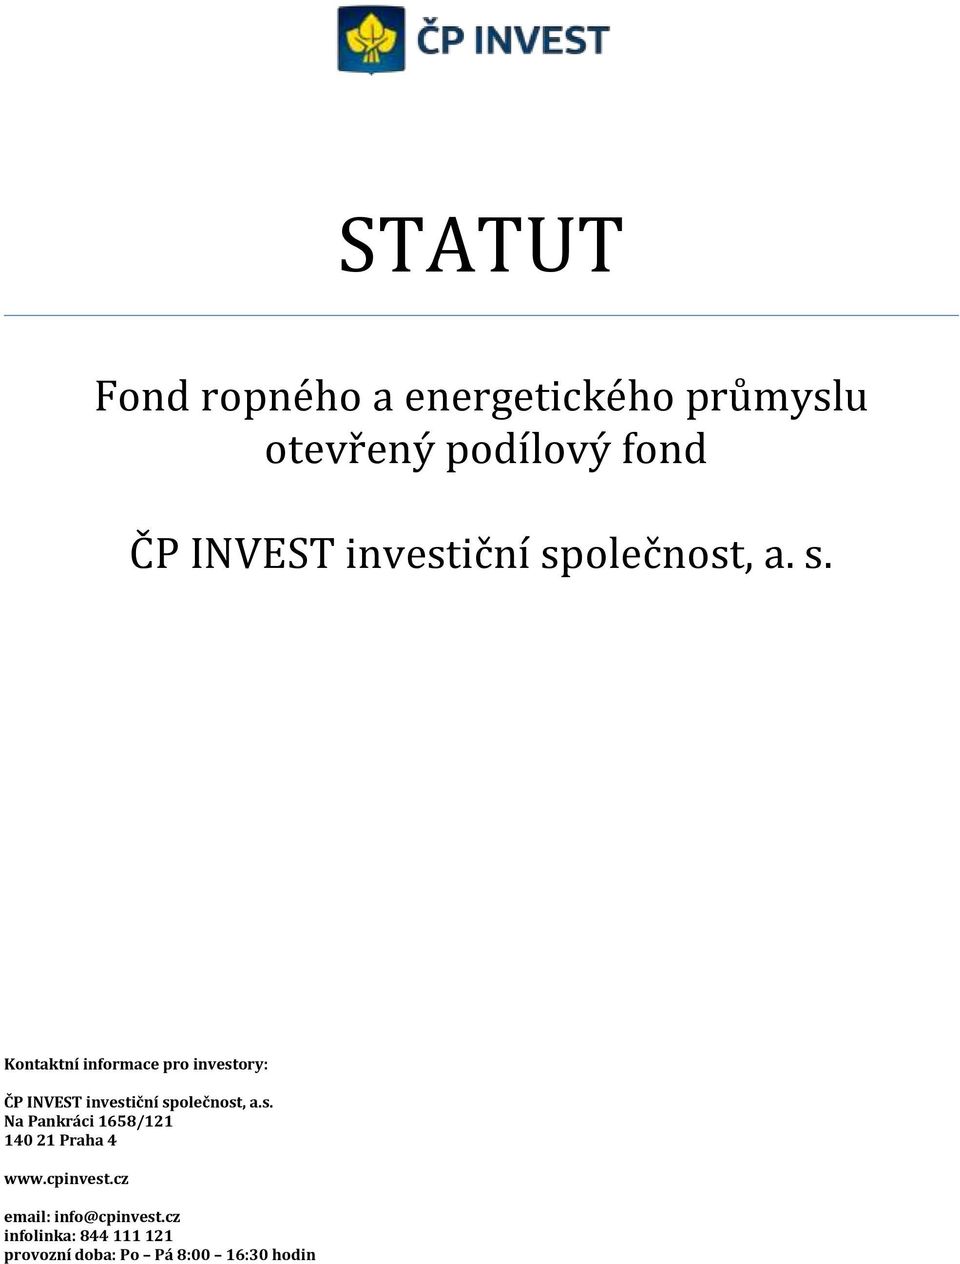 olečnost, a. s. Kontaktní informace pro investory: ČP INVEST olečnost, a.s. Na Pankráci 1658/121 140 21 Praha 4 www.